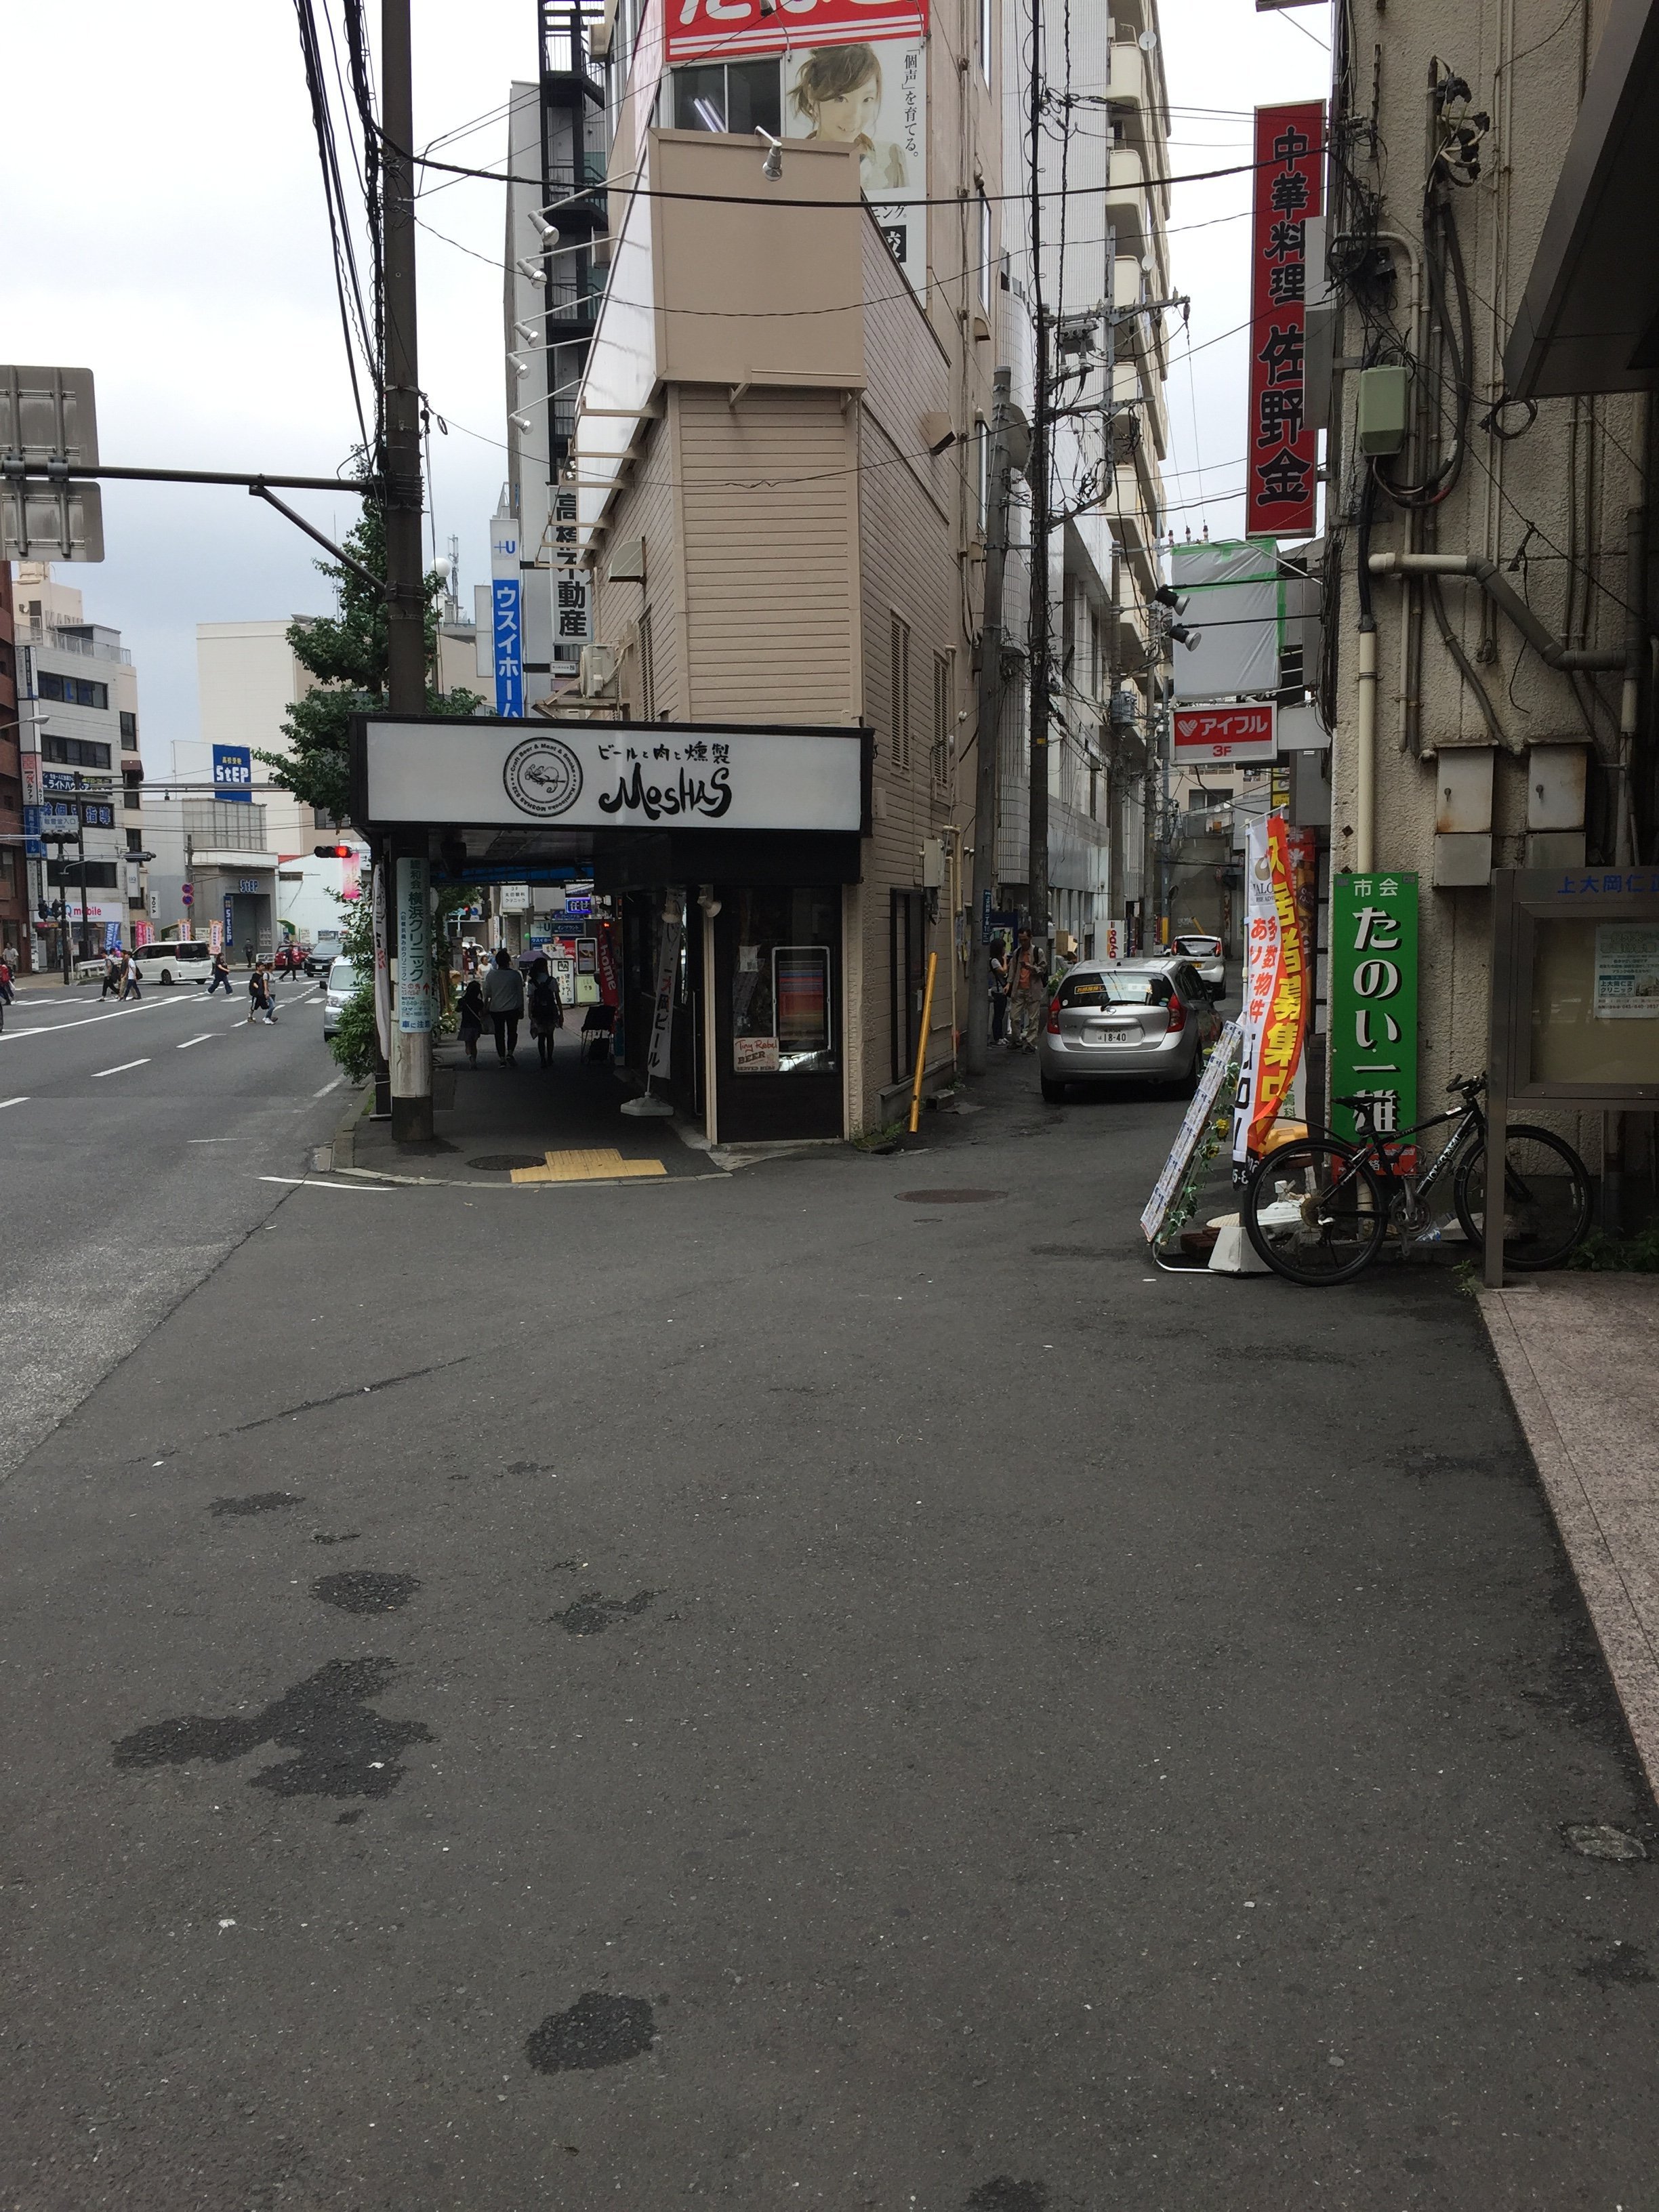 上大岡駅周辺の喫煙所と喫煙可のお店をまとめてみました まるっと上大岡